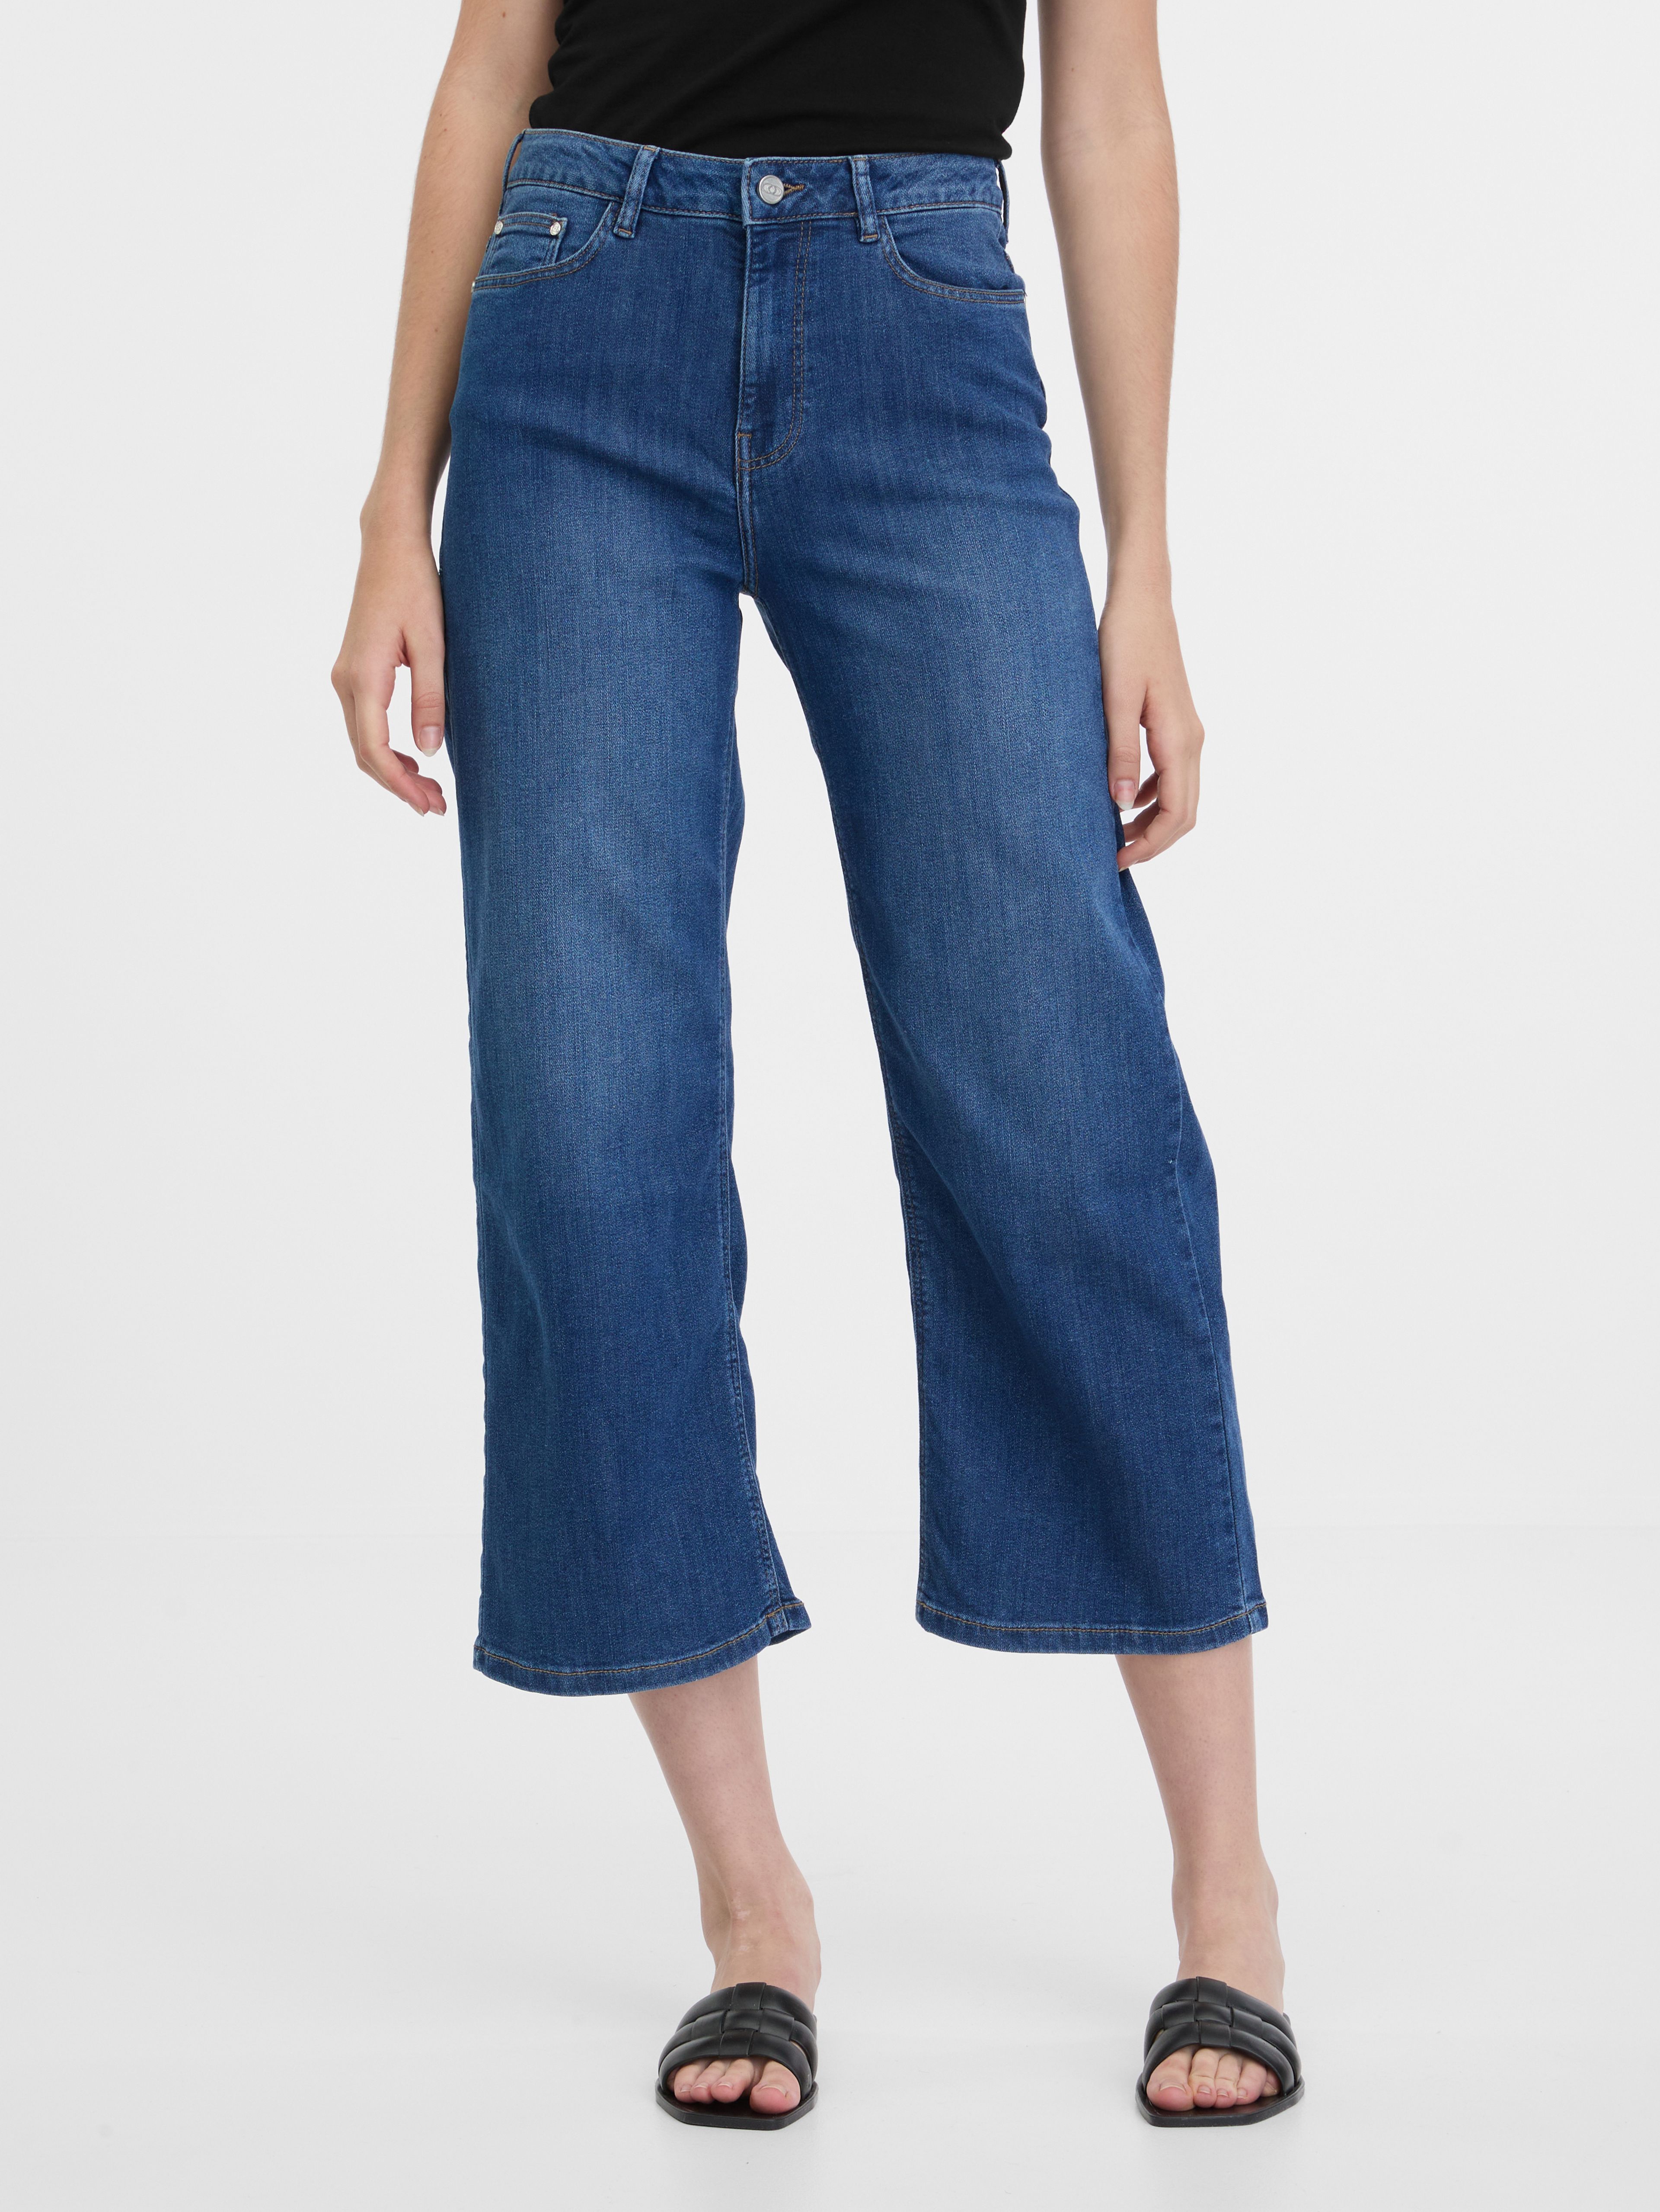 Granatowe jeansy damskie z szerokimi nogawkami ORSAY